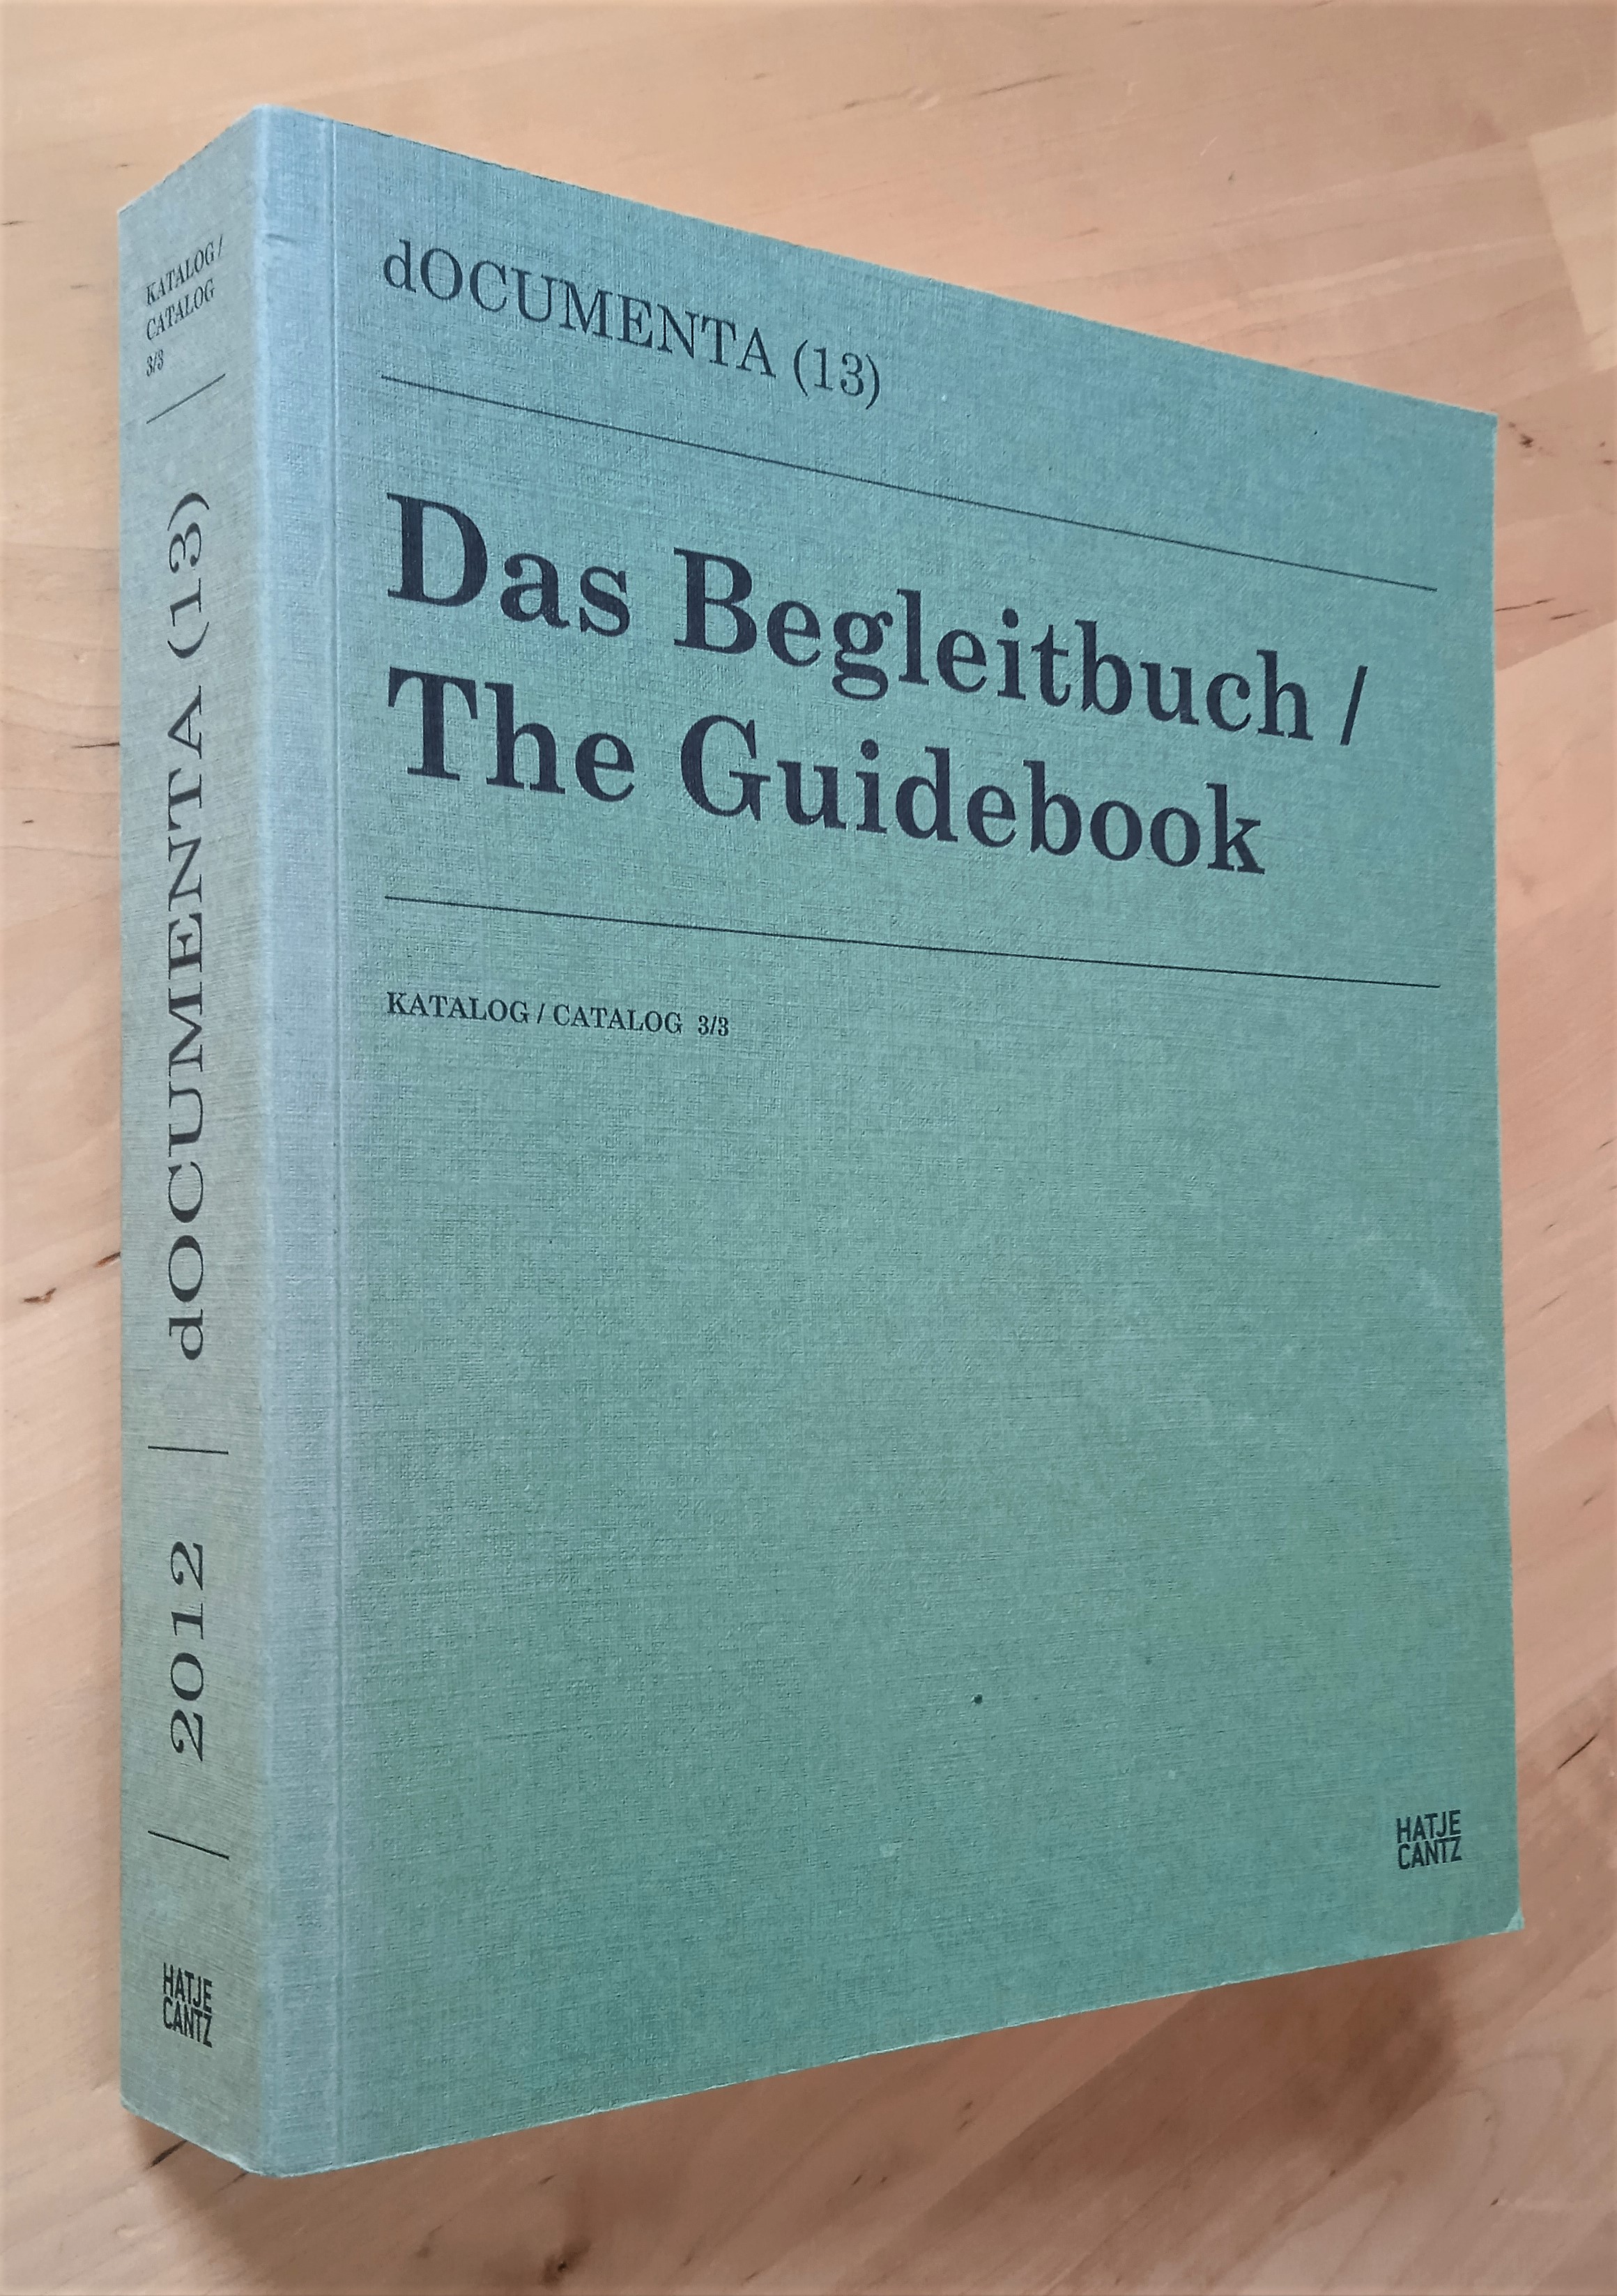 Das Begleitbuch / The Guidebook (dOCUMENTA 13)